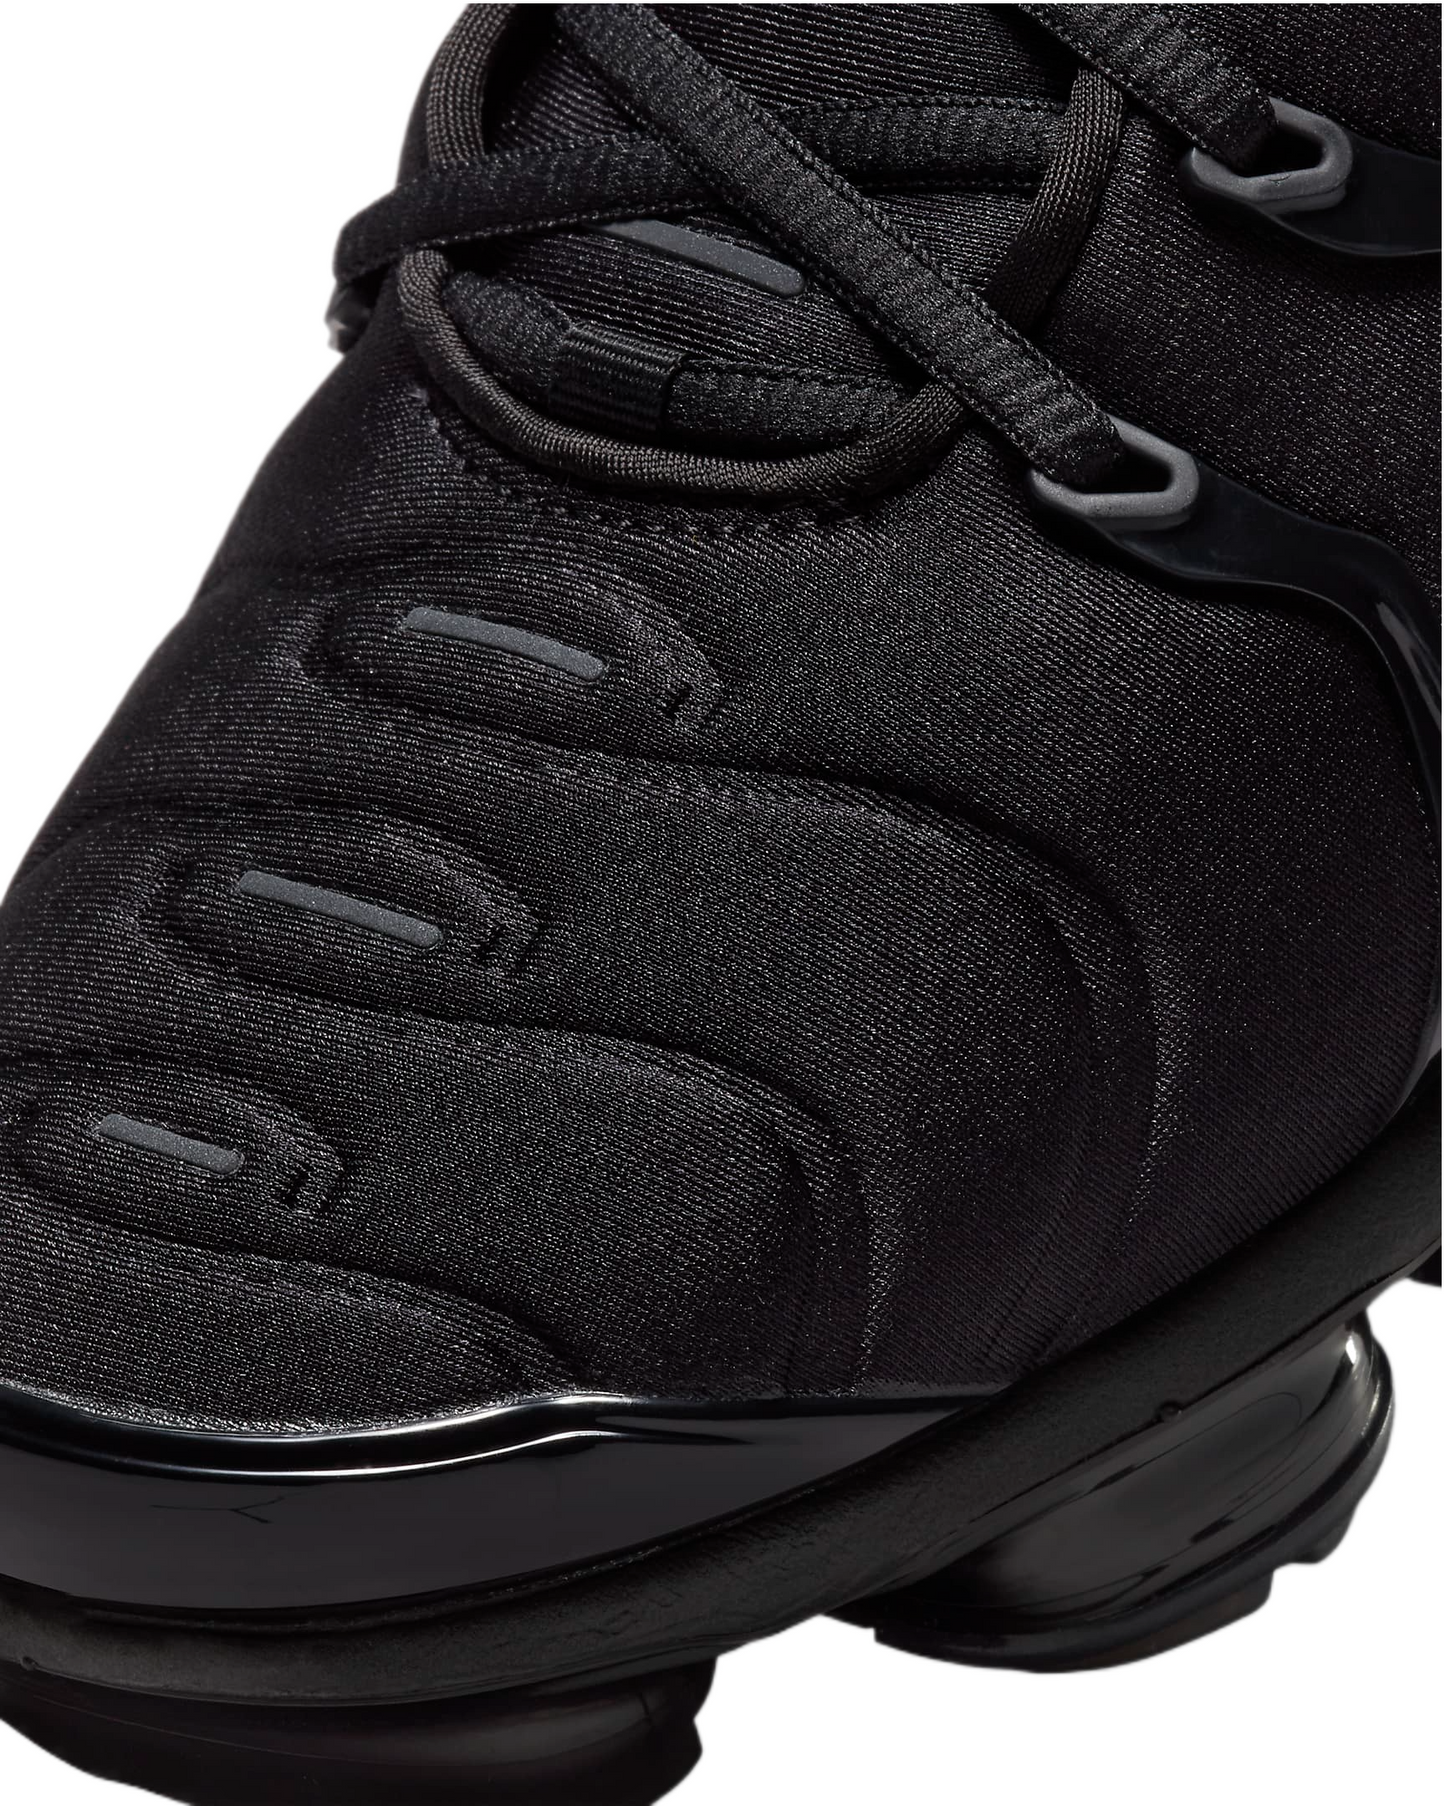 Nike Men Air Vapormax Plus Black / Black-Dark Grey 924453-004